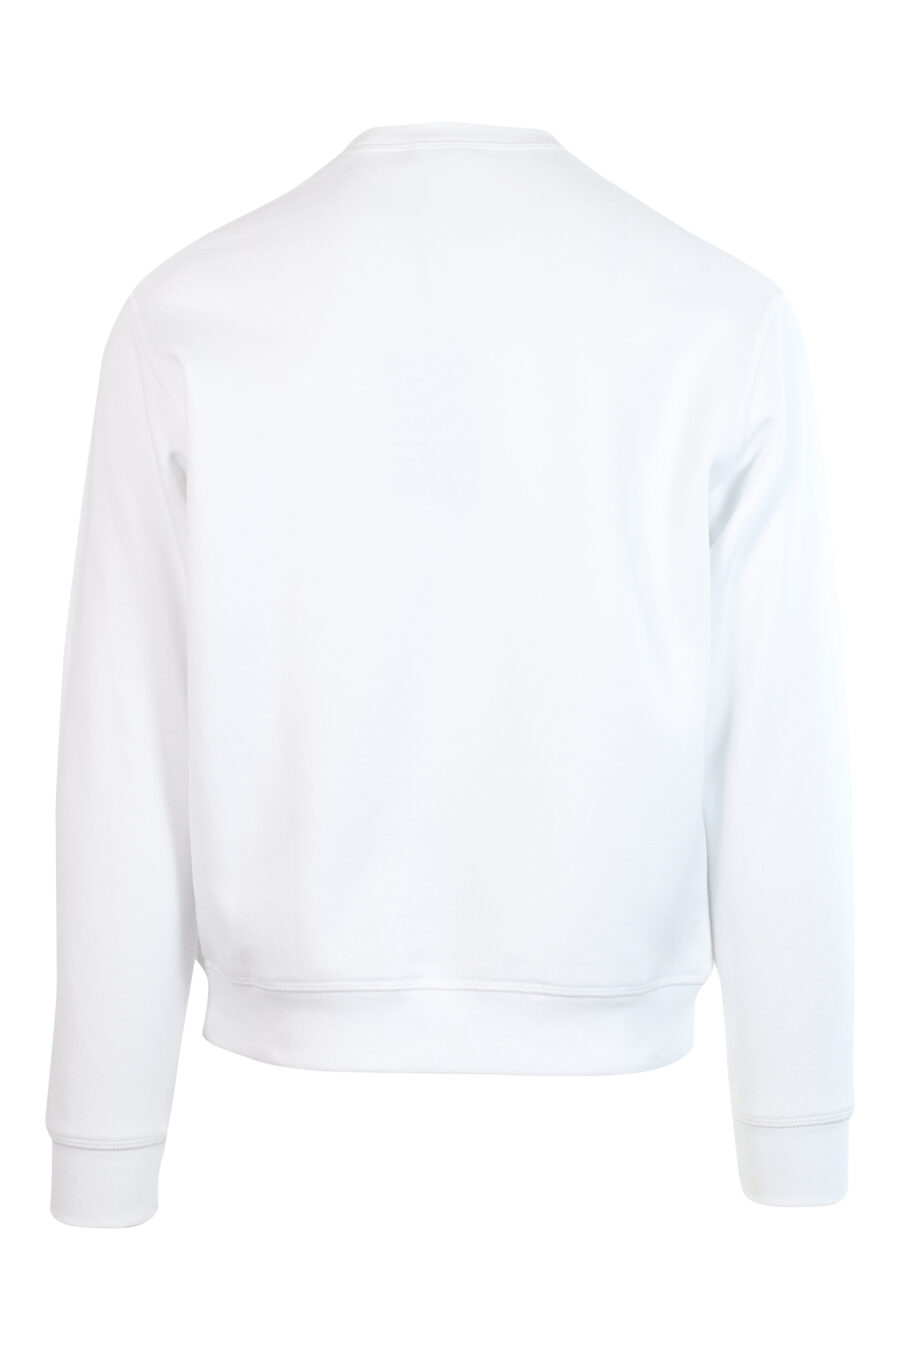 Weißes Sweatshirt mit "icon pixeled" Maxilogo in türkis und fuchsia - 8052134982228 2